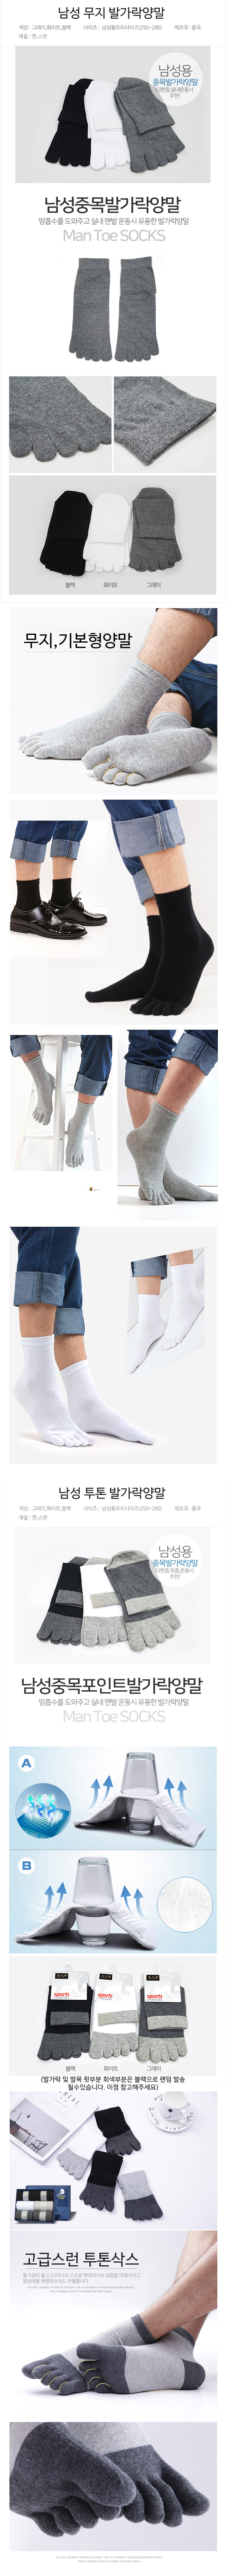 man-foot-socks.jpg